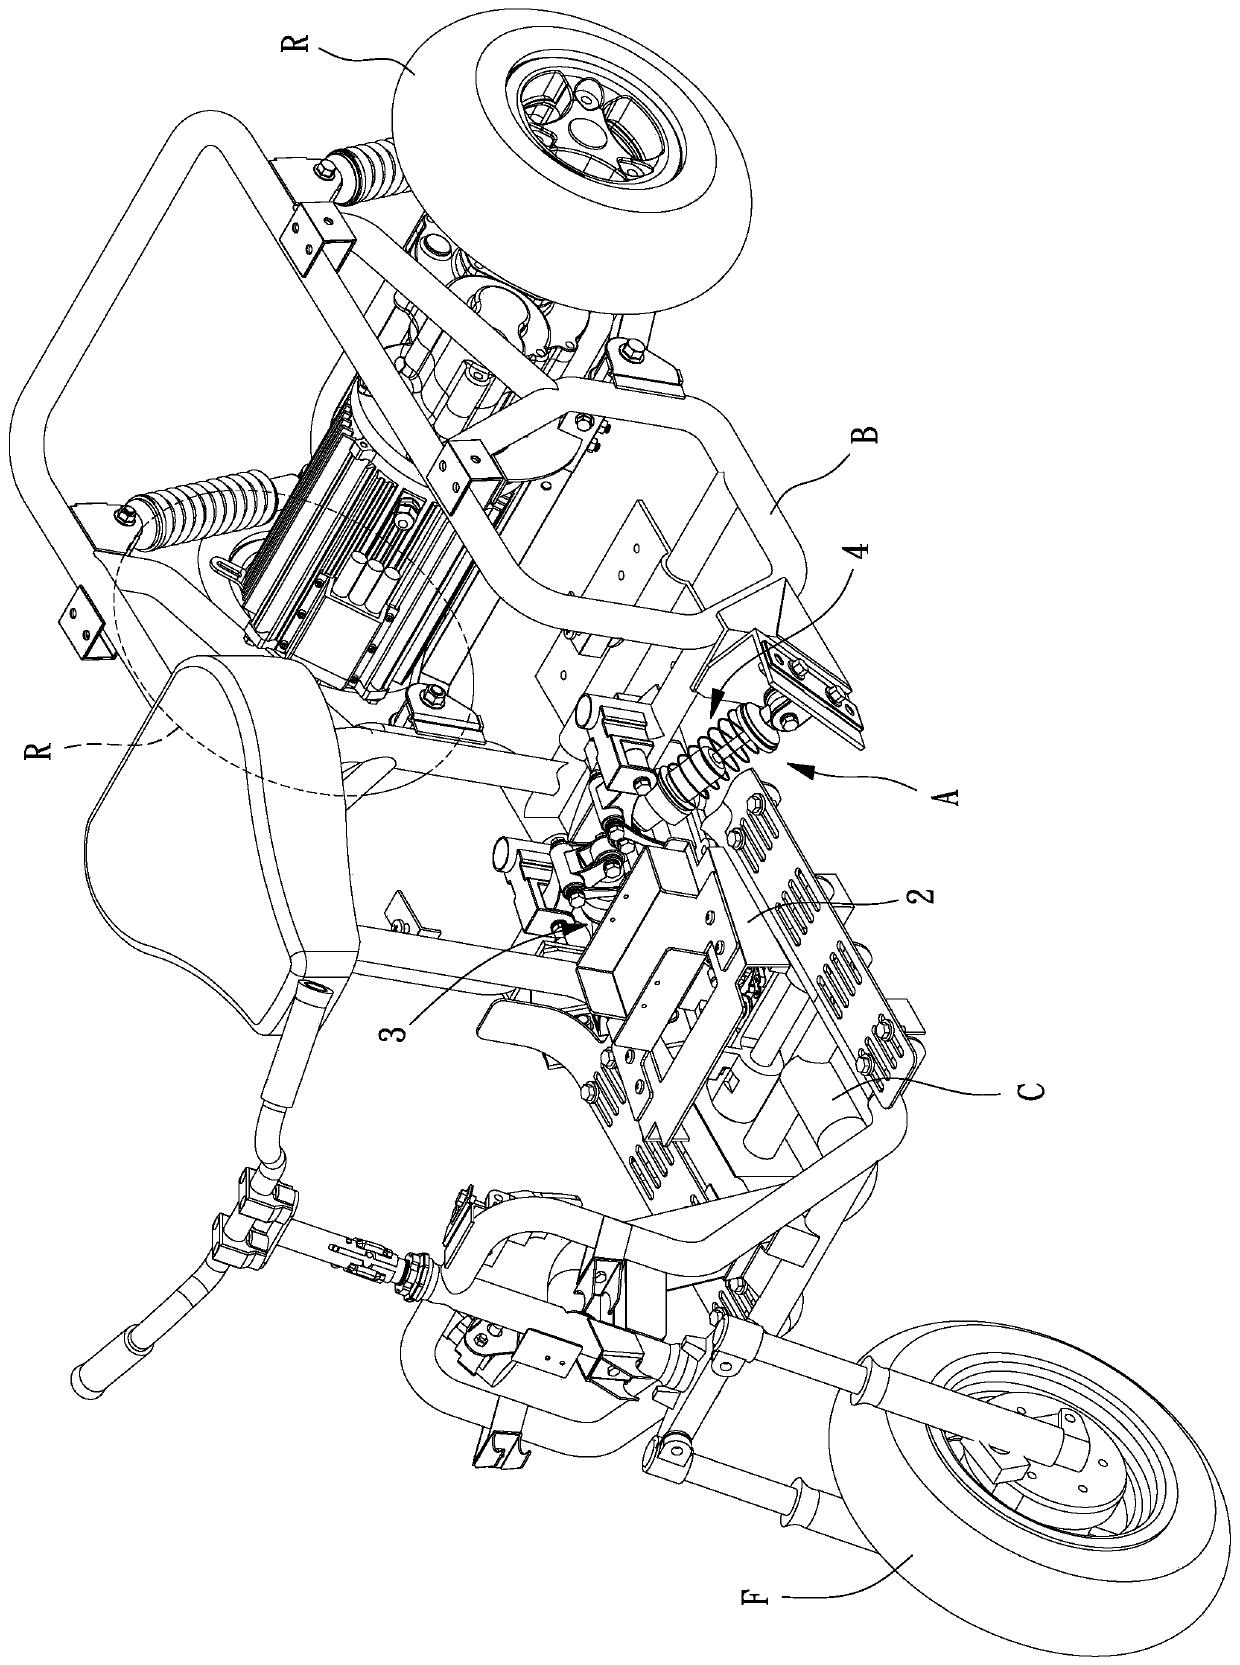 Multi-link vehicle tilt back mechanism